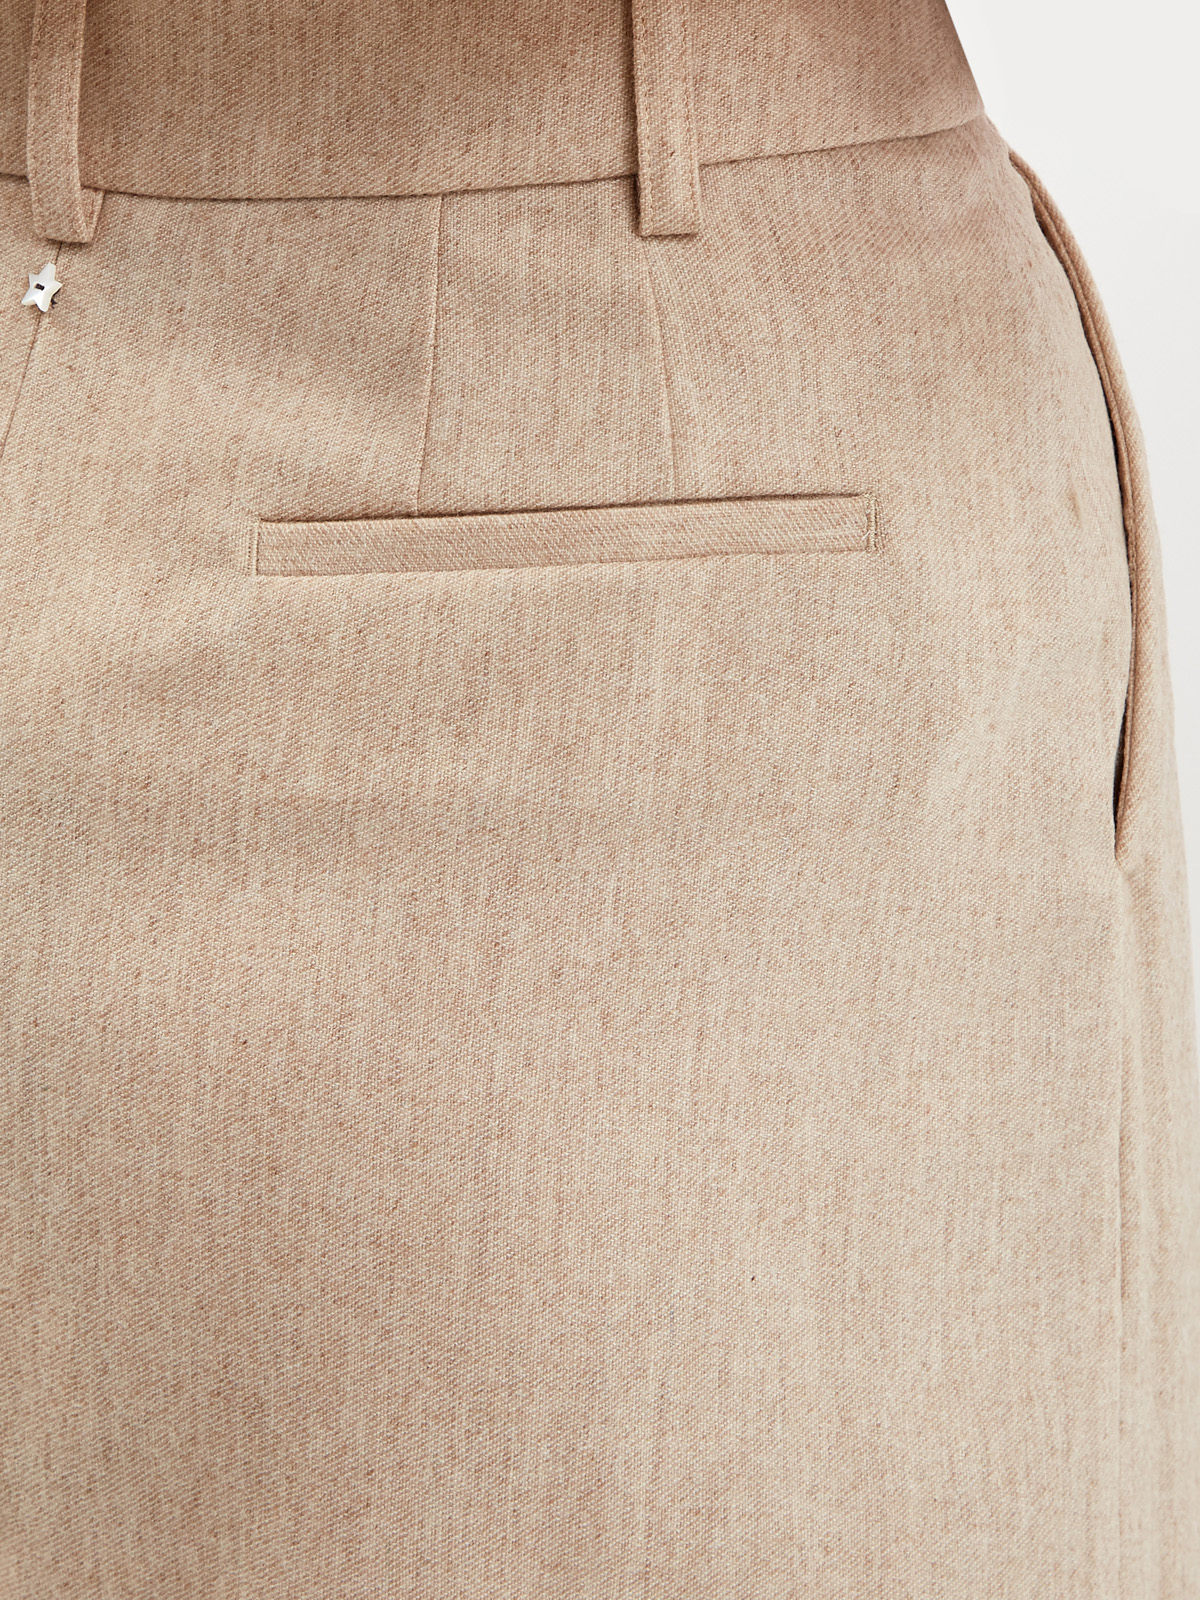 Удлиненные шорты из шерсти с заложенными складками LORENA ANTONIAZZI, цвет бежевый, размер 38;40;42 - фото 6